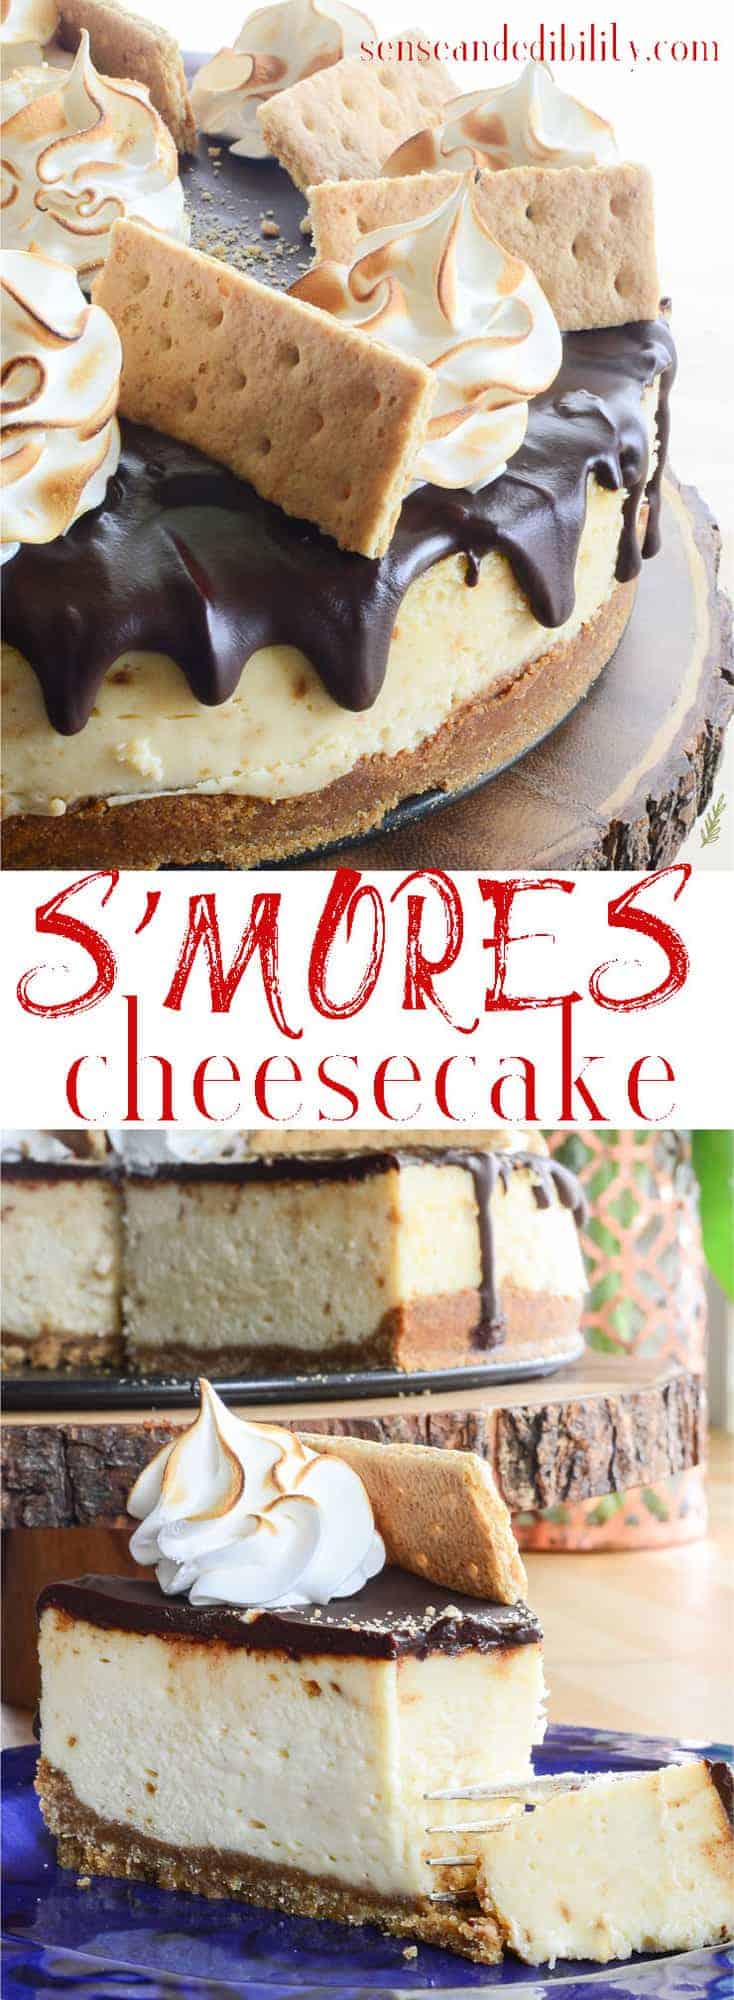 Sense & Edibility's S'mores Cheesecake